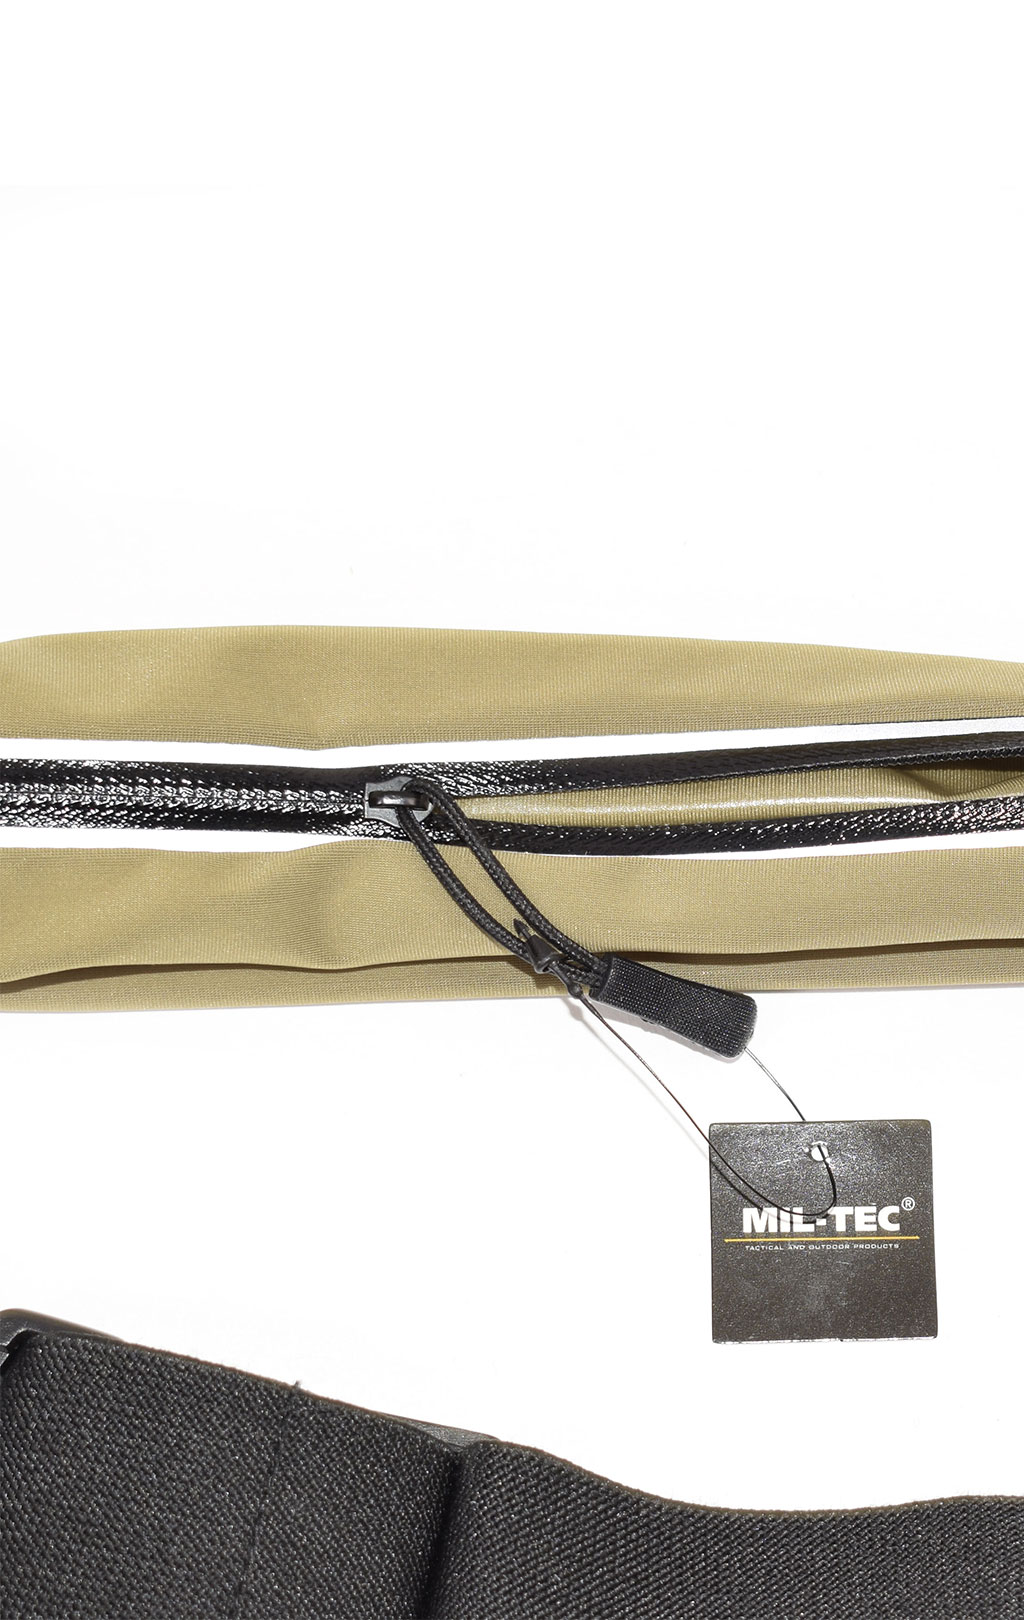 Ремень-поясная сумка Mil-Tec водозащитный Money Belt olive 